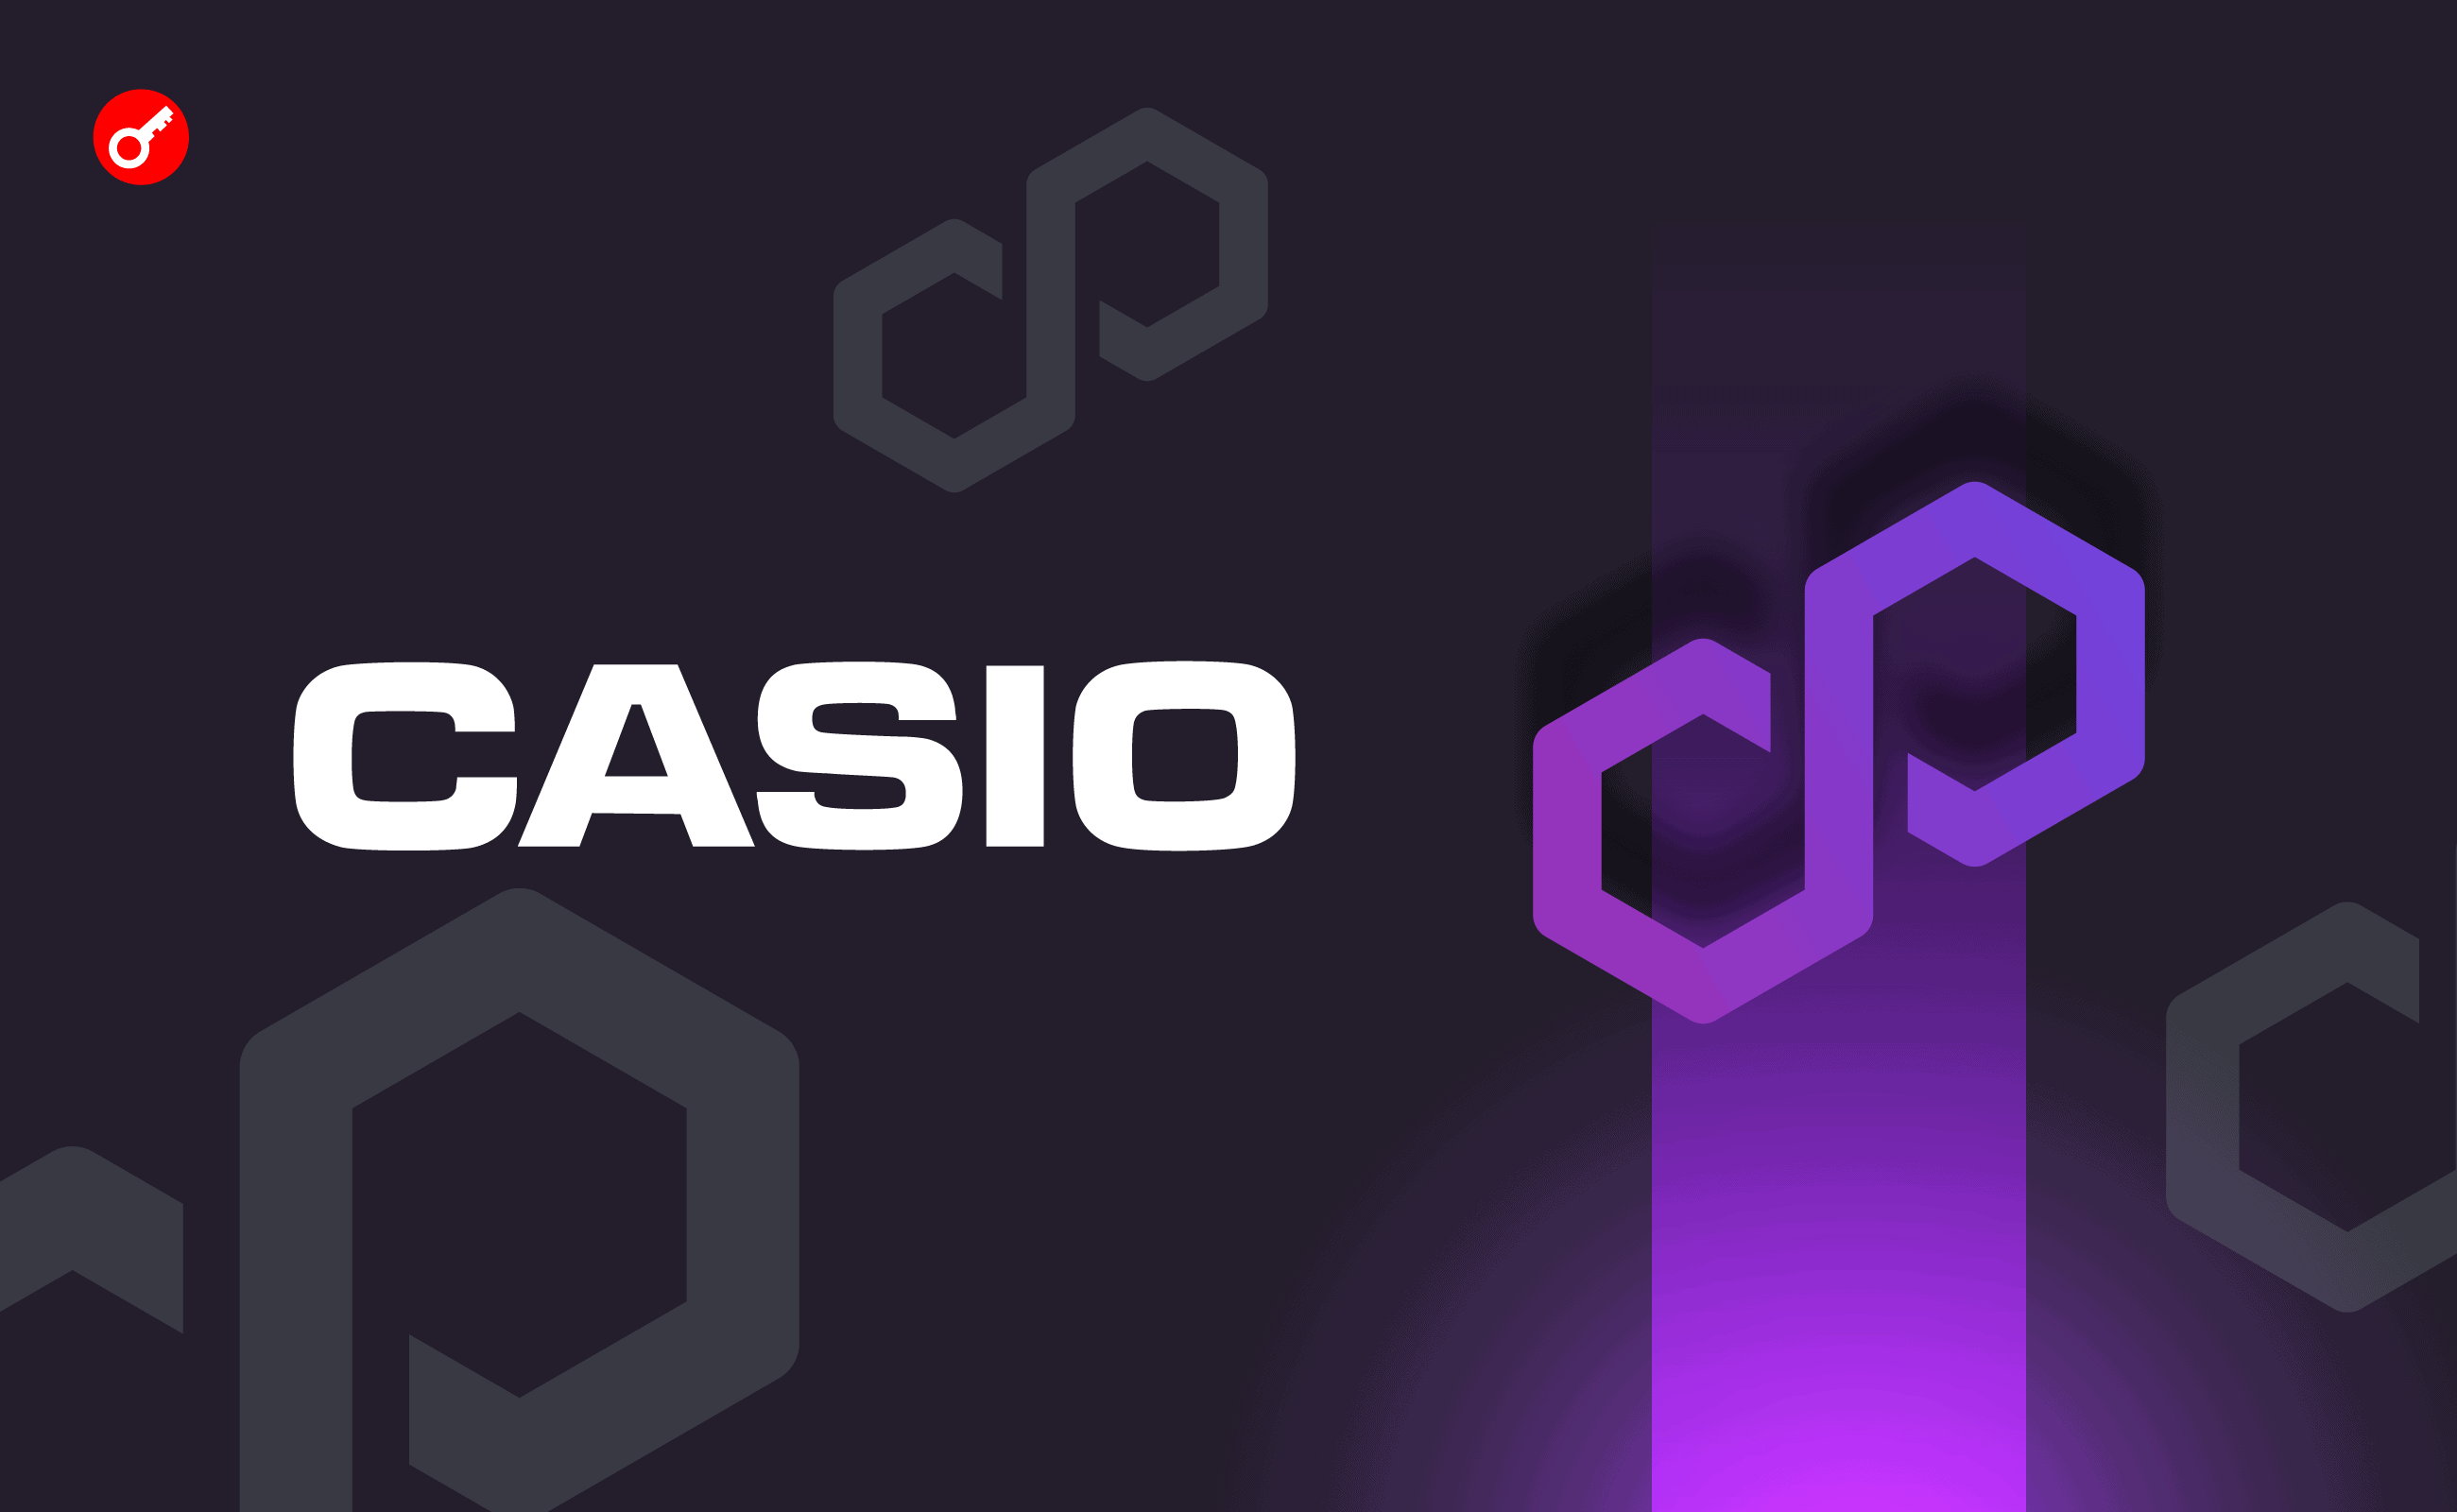 Японский производитель электроники Casio объявил о партнерстве с Polygon Labs. Заглавный коллаж новости.